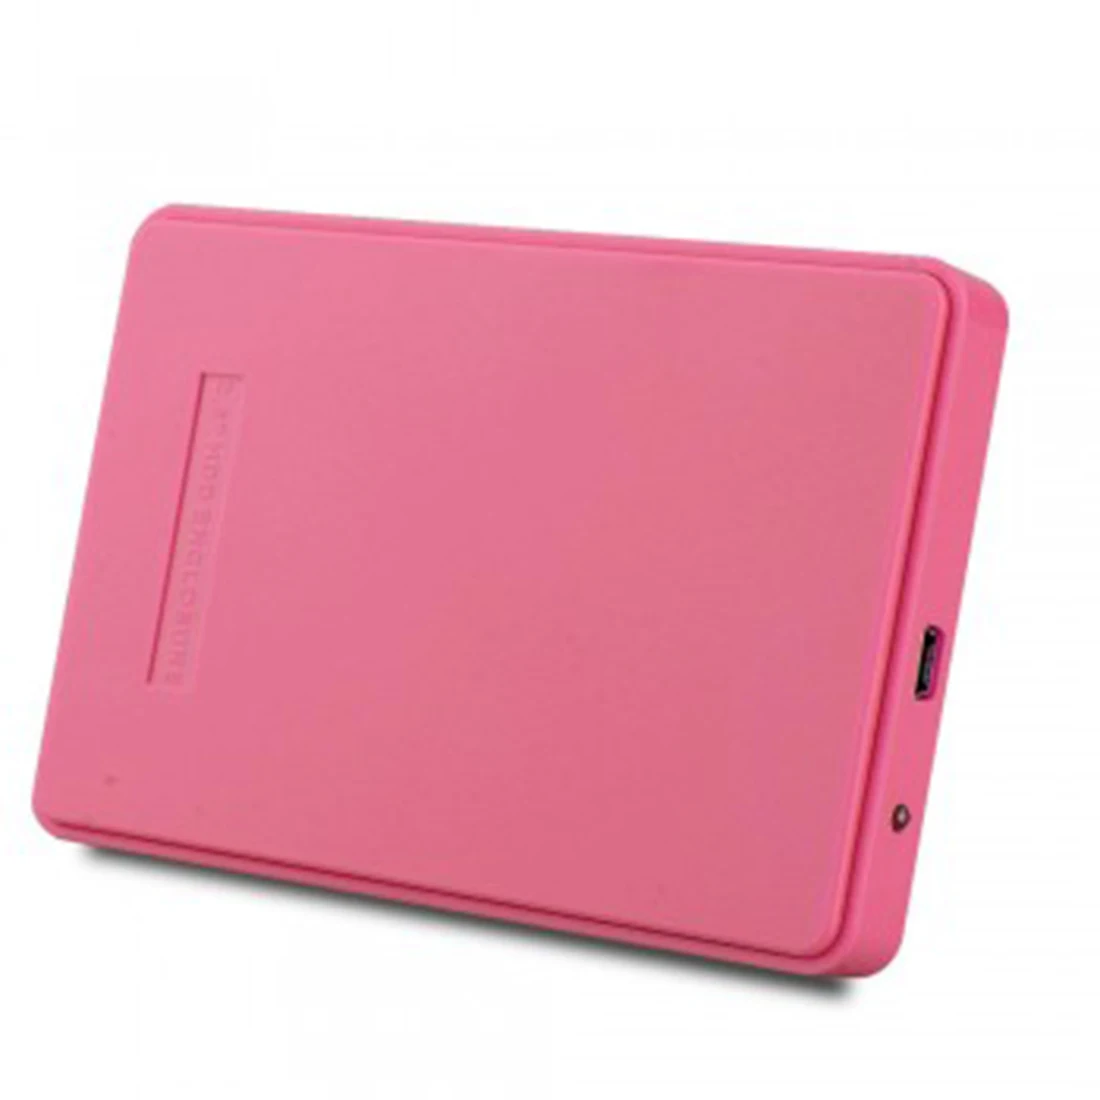 Etmakit Новый розовый внешний жесткий диск Корпус USB 2.0 SATA 2.5 "дюймов Портативный случае HDD Поддержка 2 ТБ жесткий диск